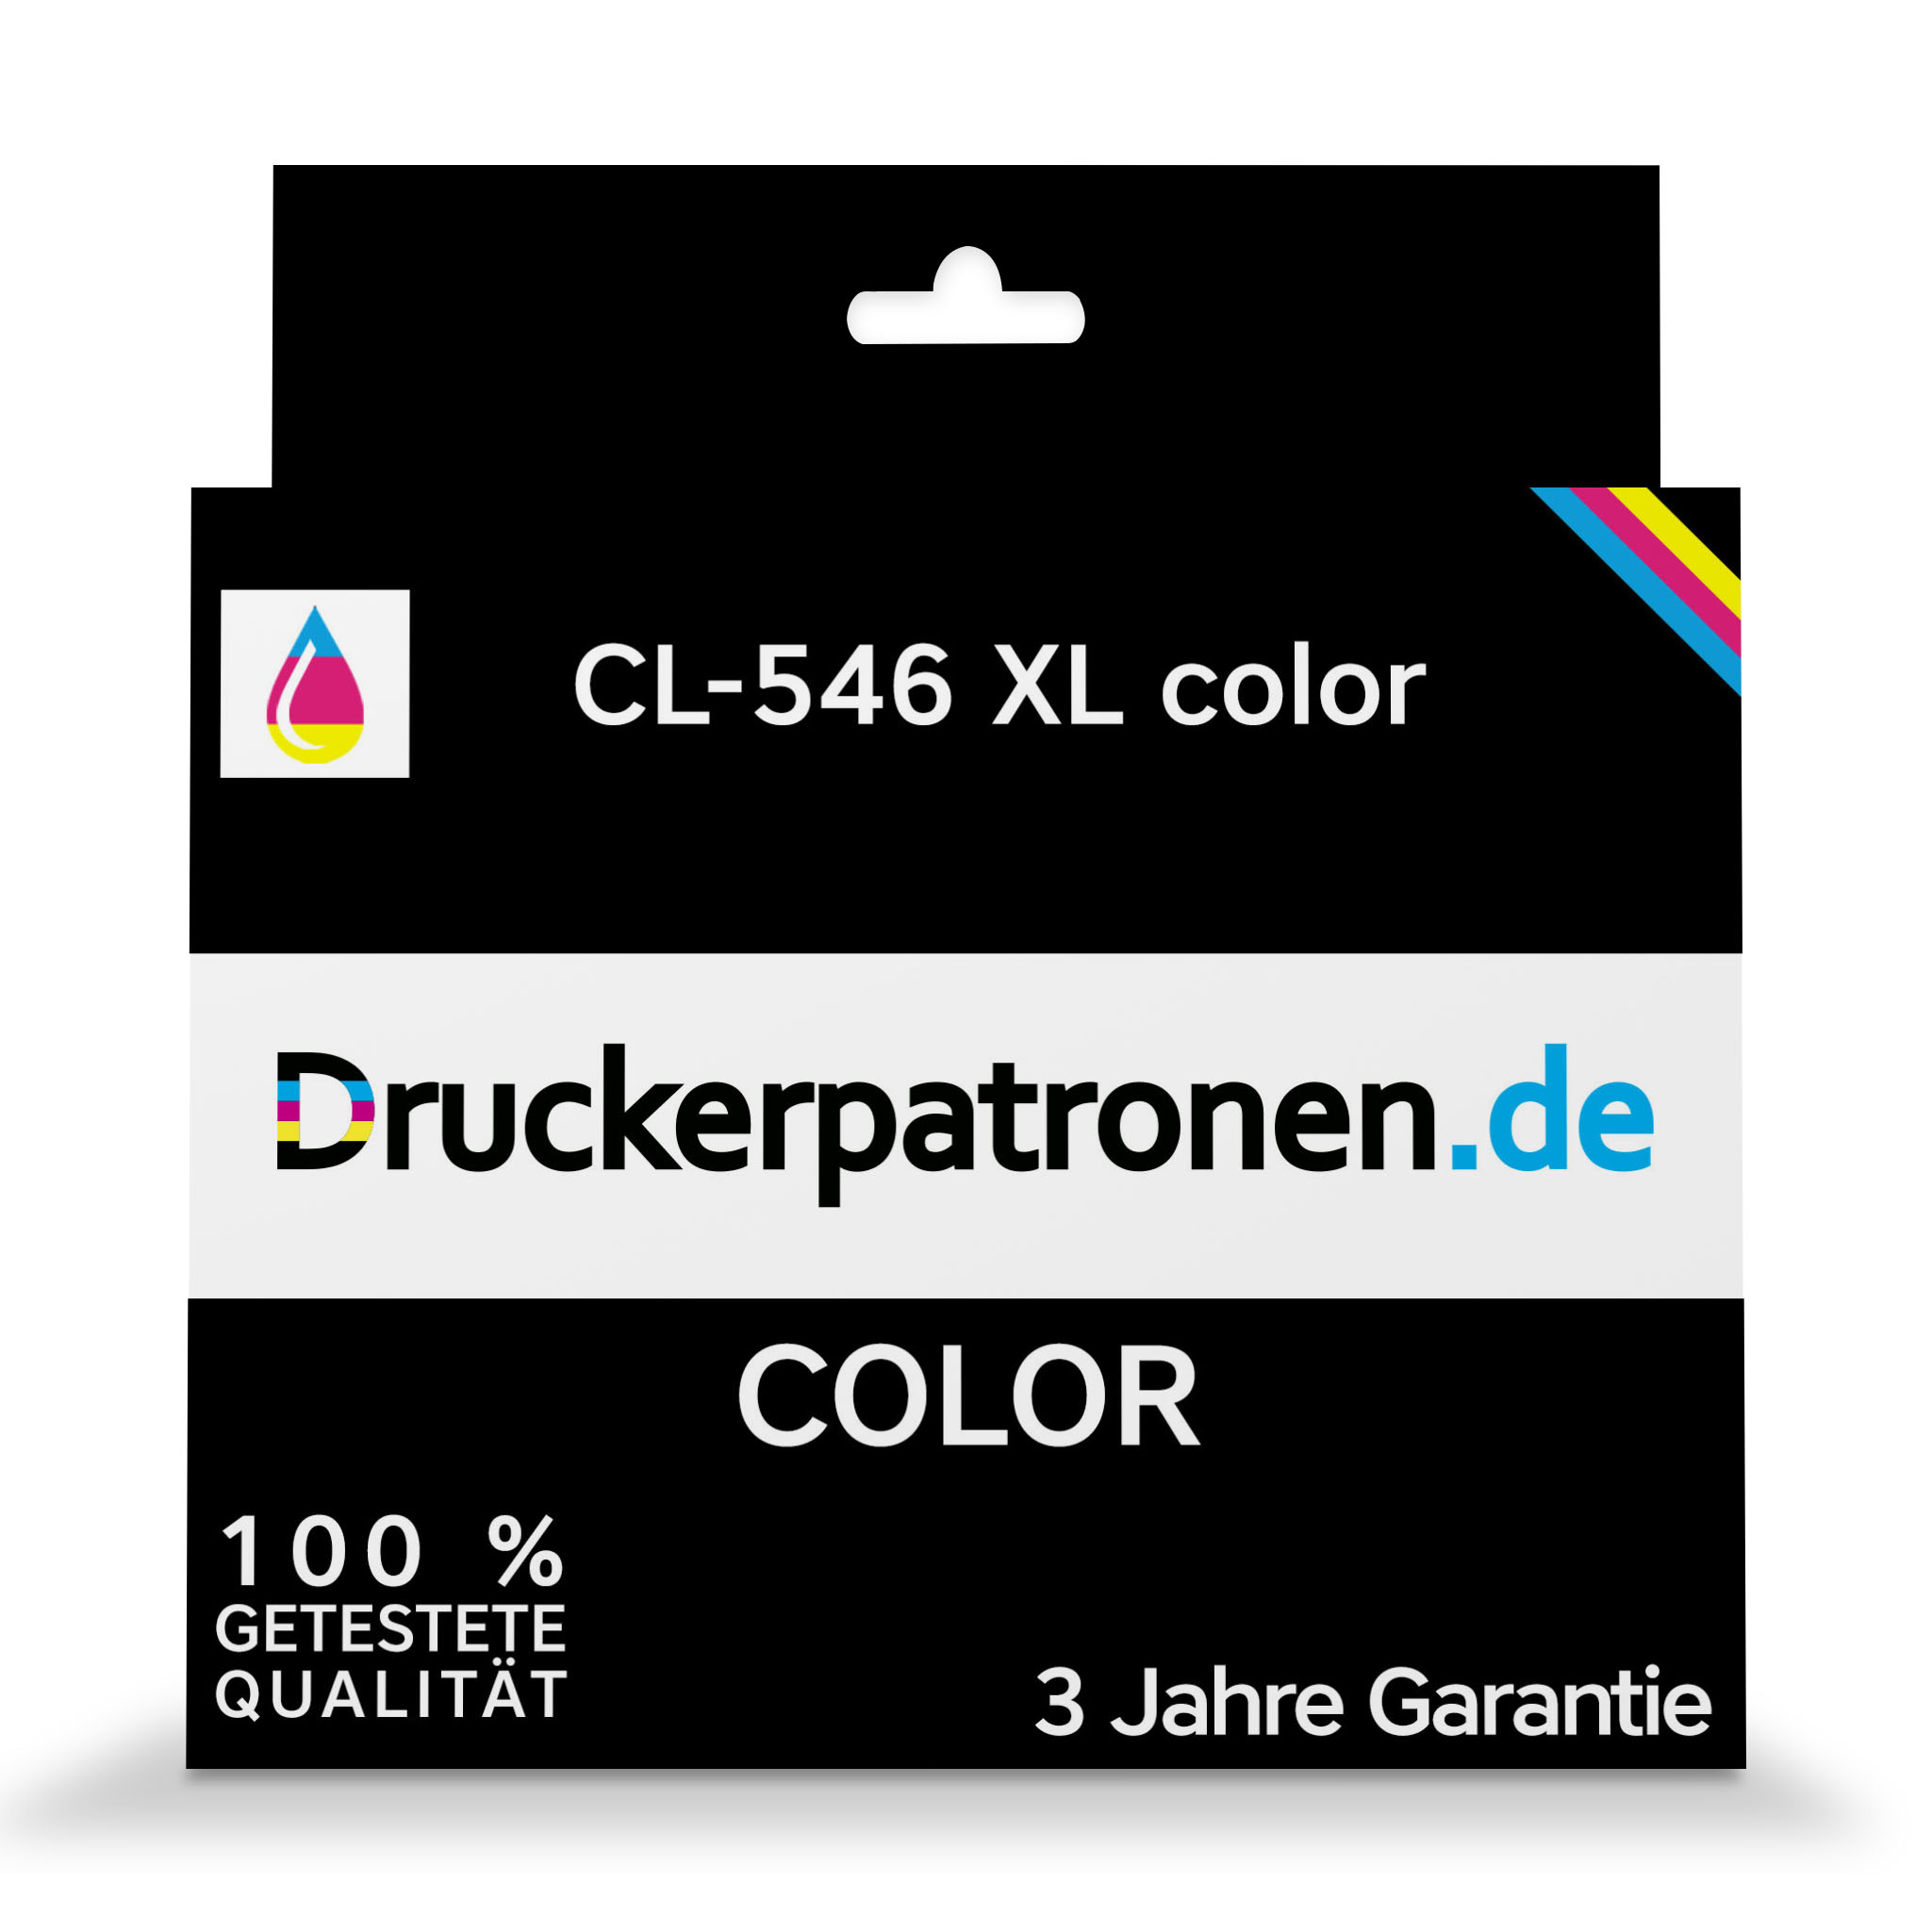 CL-546 XL color